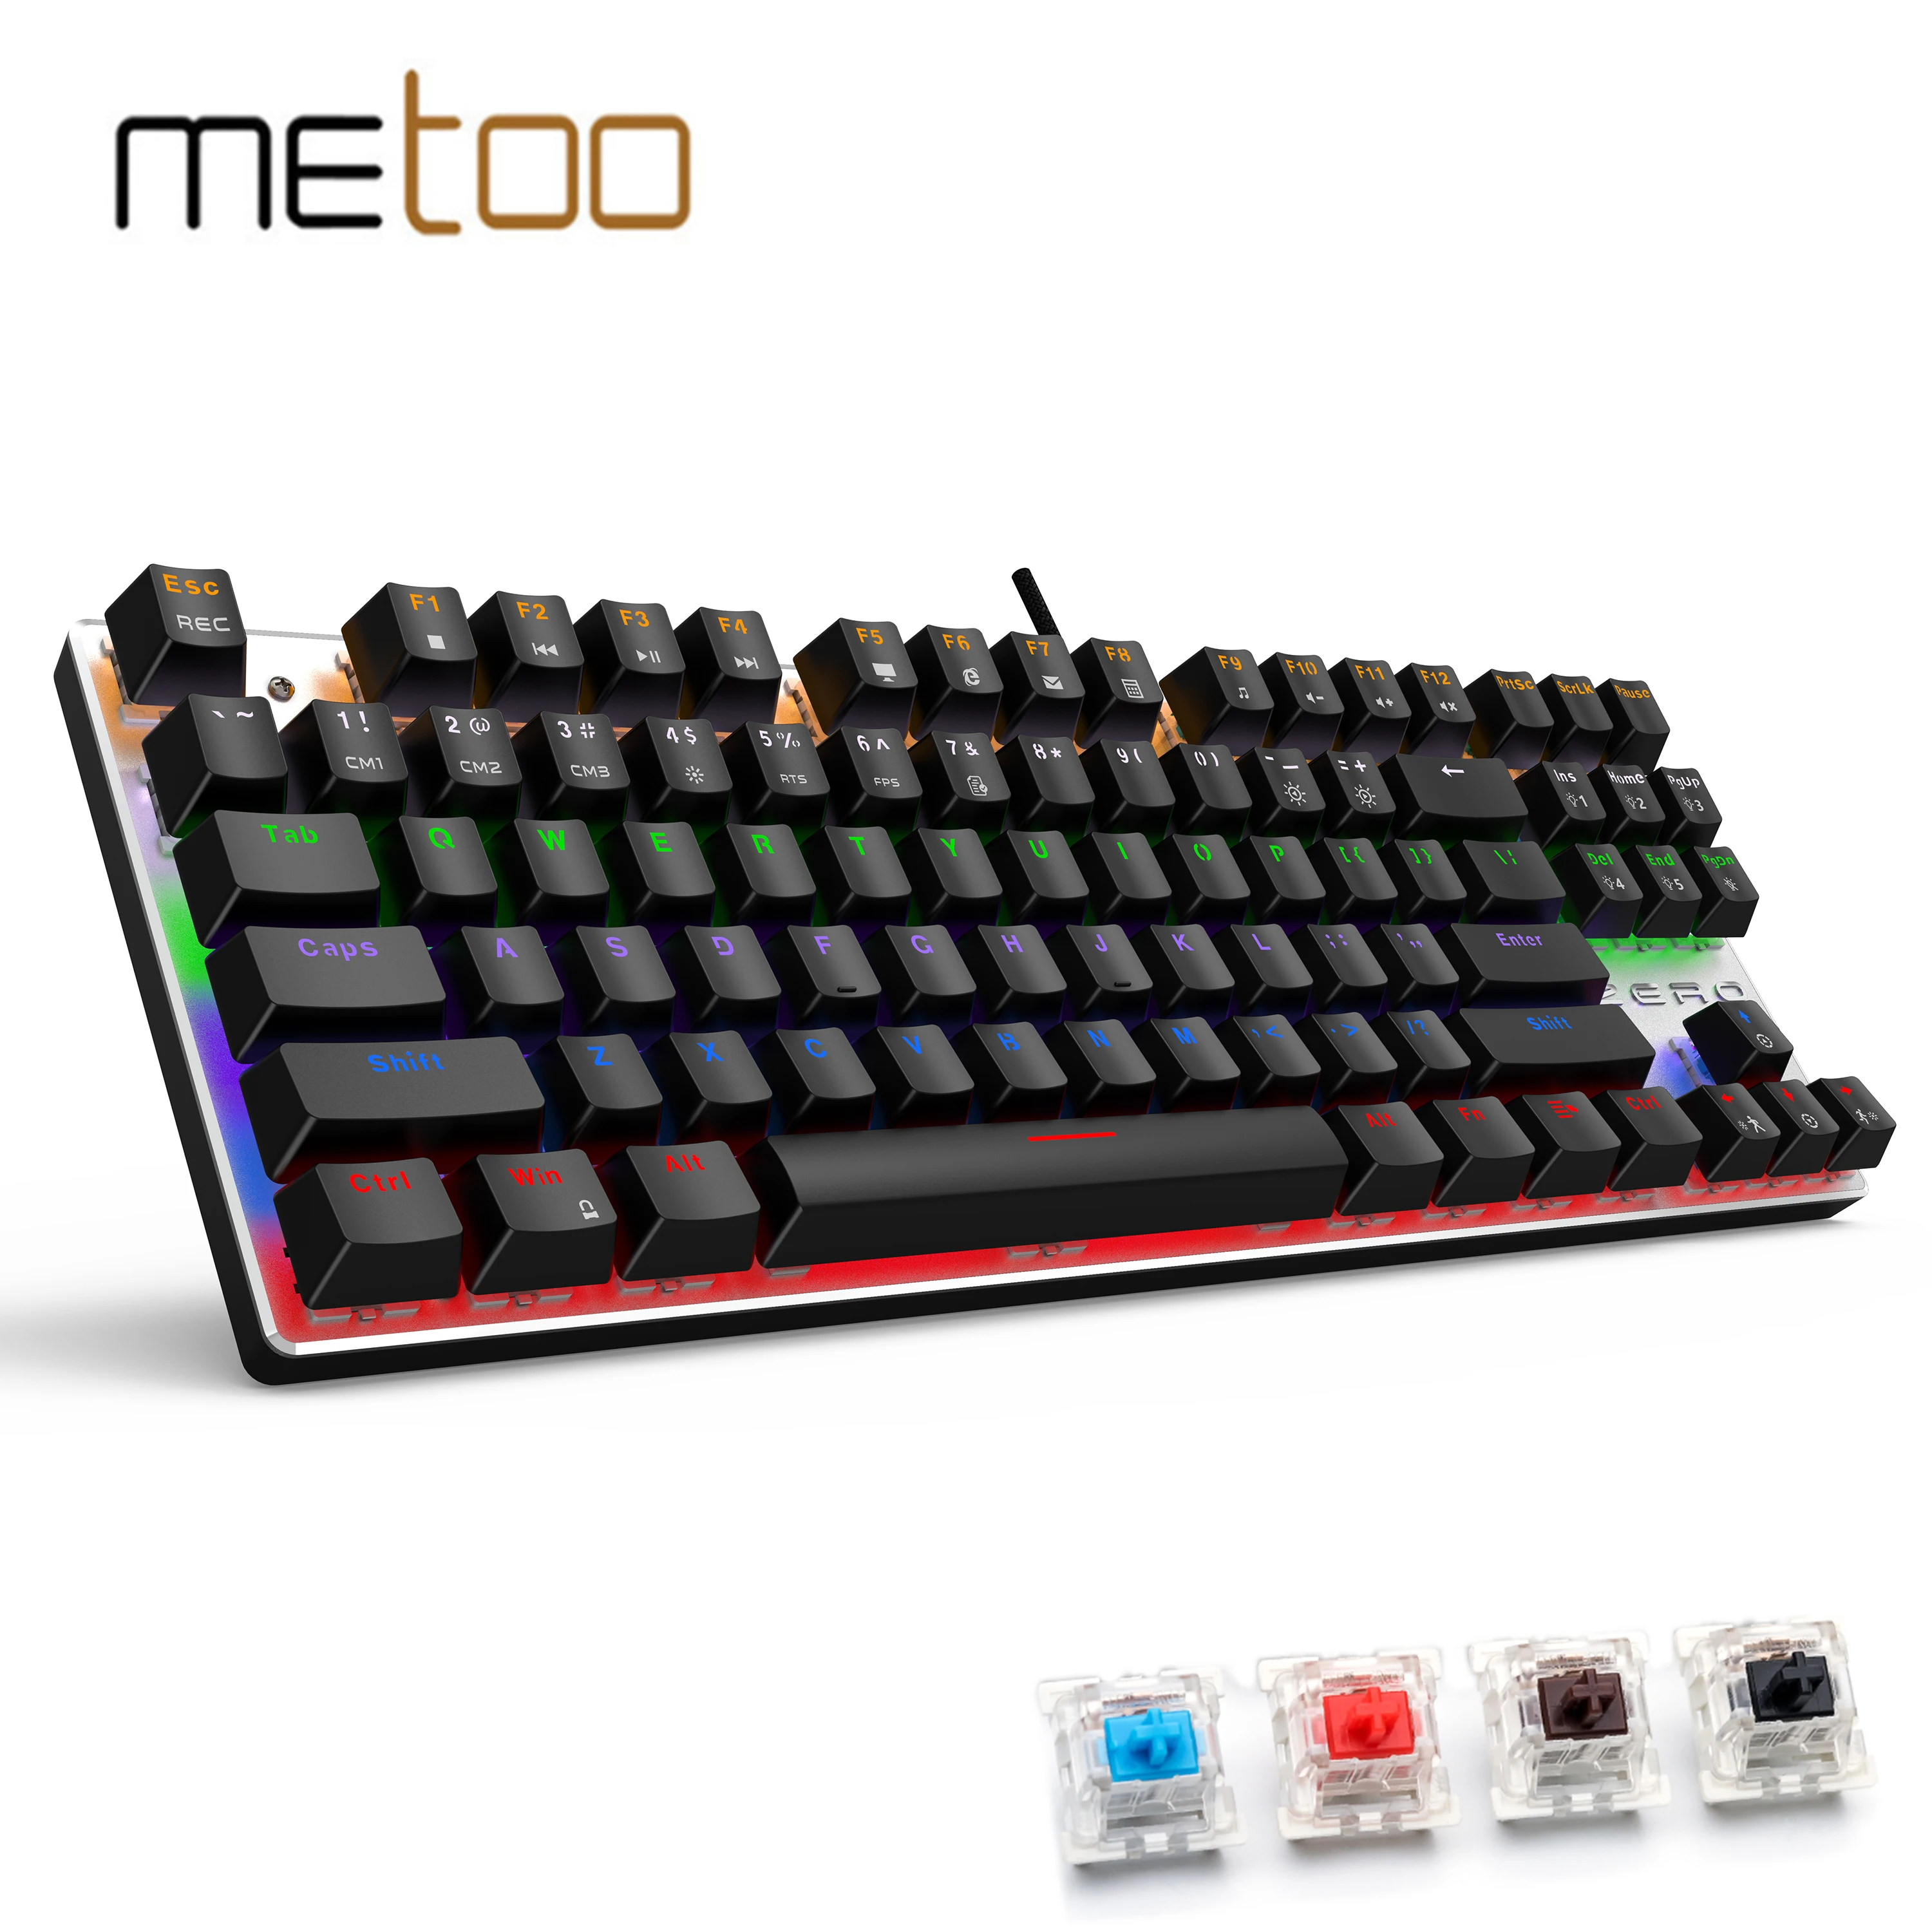 

Игровая Механическая Проводная клавиатура Metoo, 87 клавиш, синий/красный переключатель, подсветка, защита от фиктивных нажатий, для ПК и ноутб...